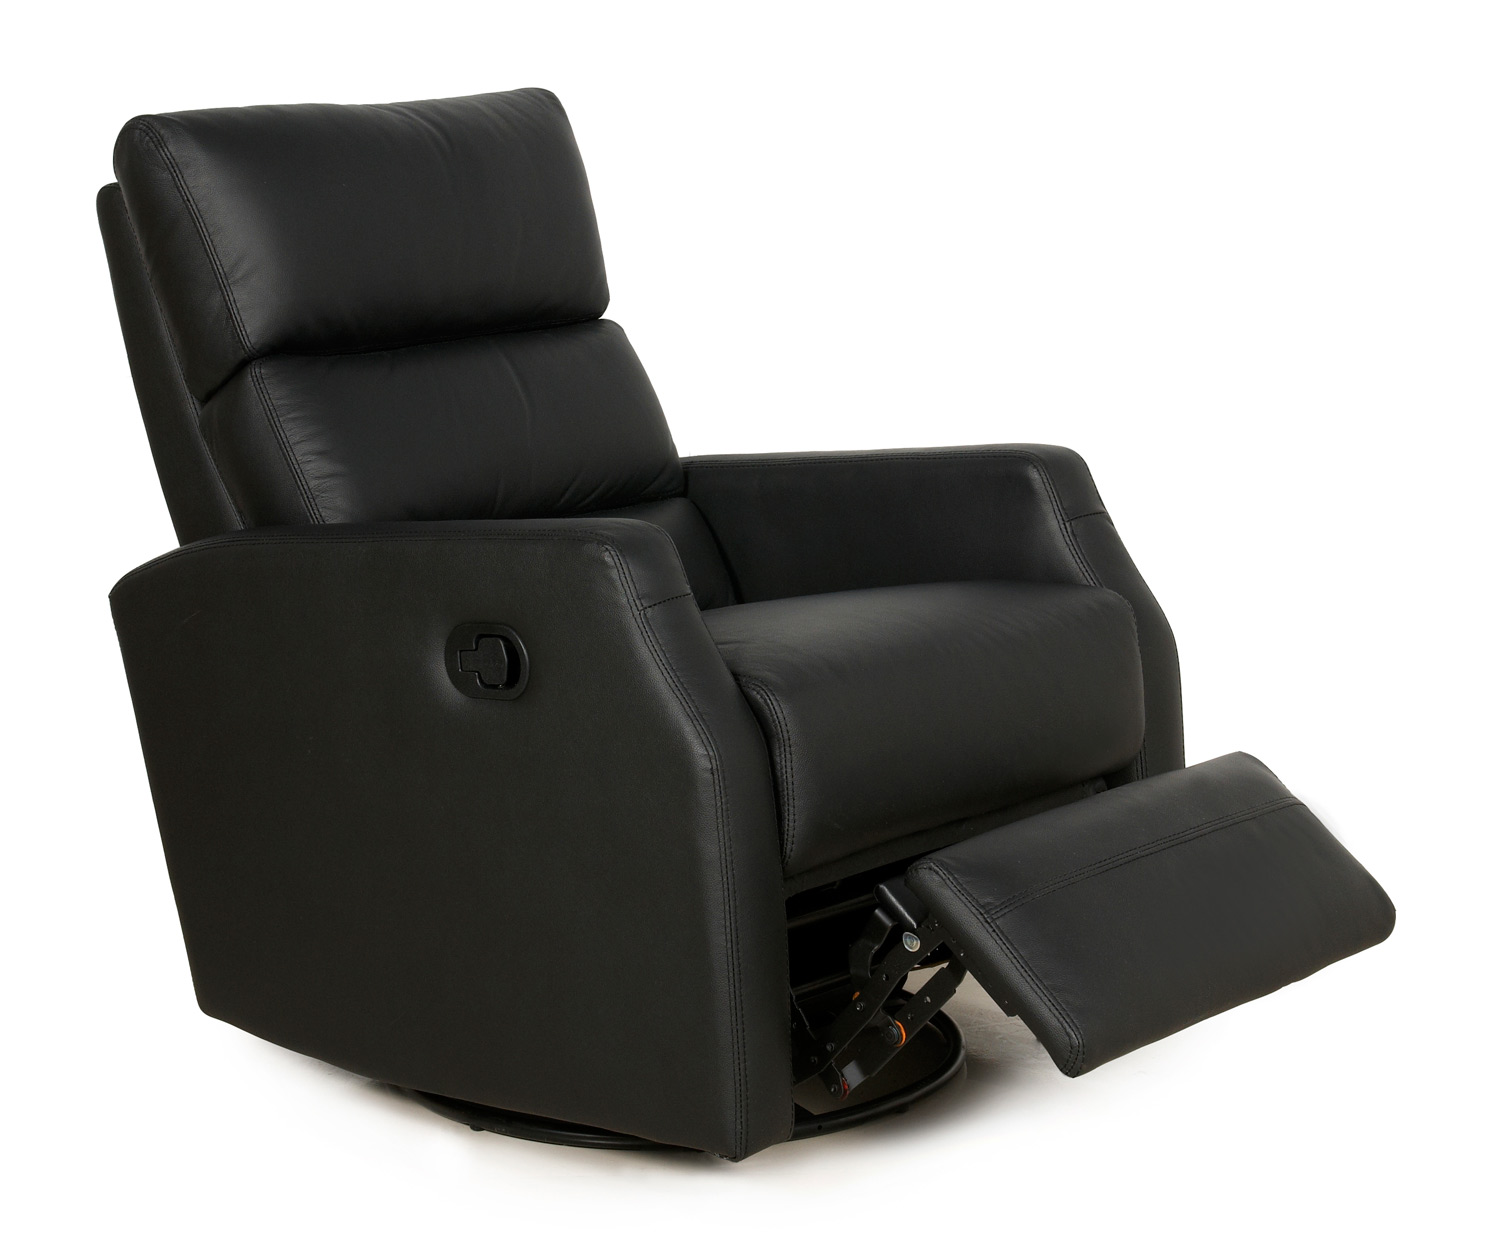 Barcalounger Talbott II Metro Living Swivel Glider Recliner Chair - Stargo Black LV